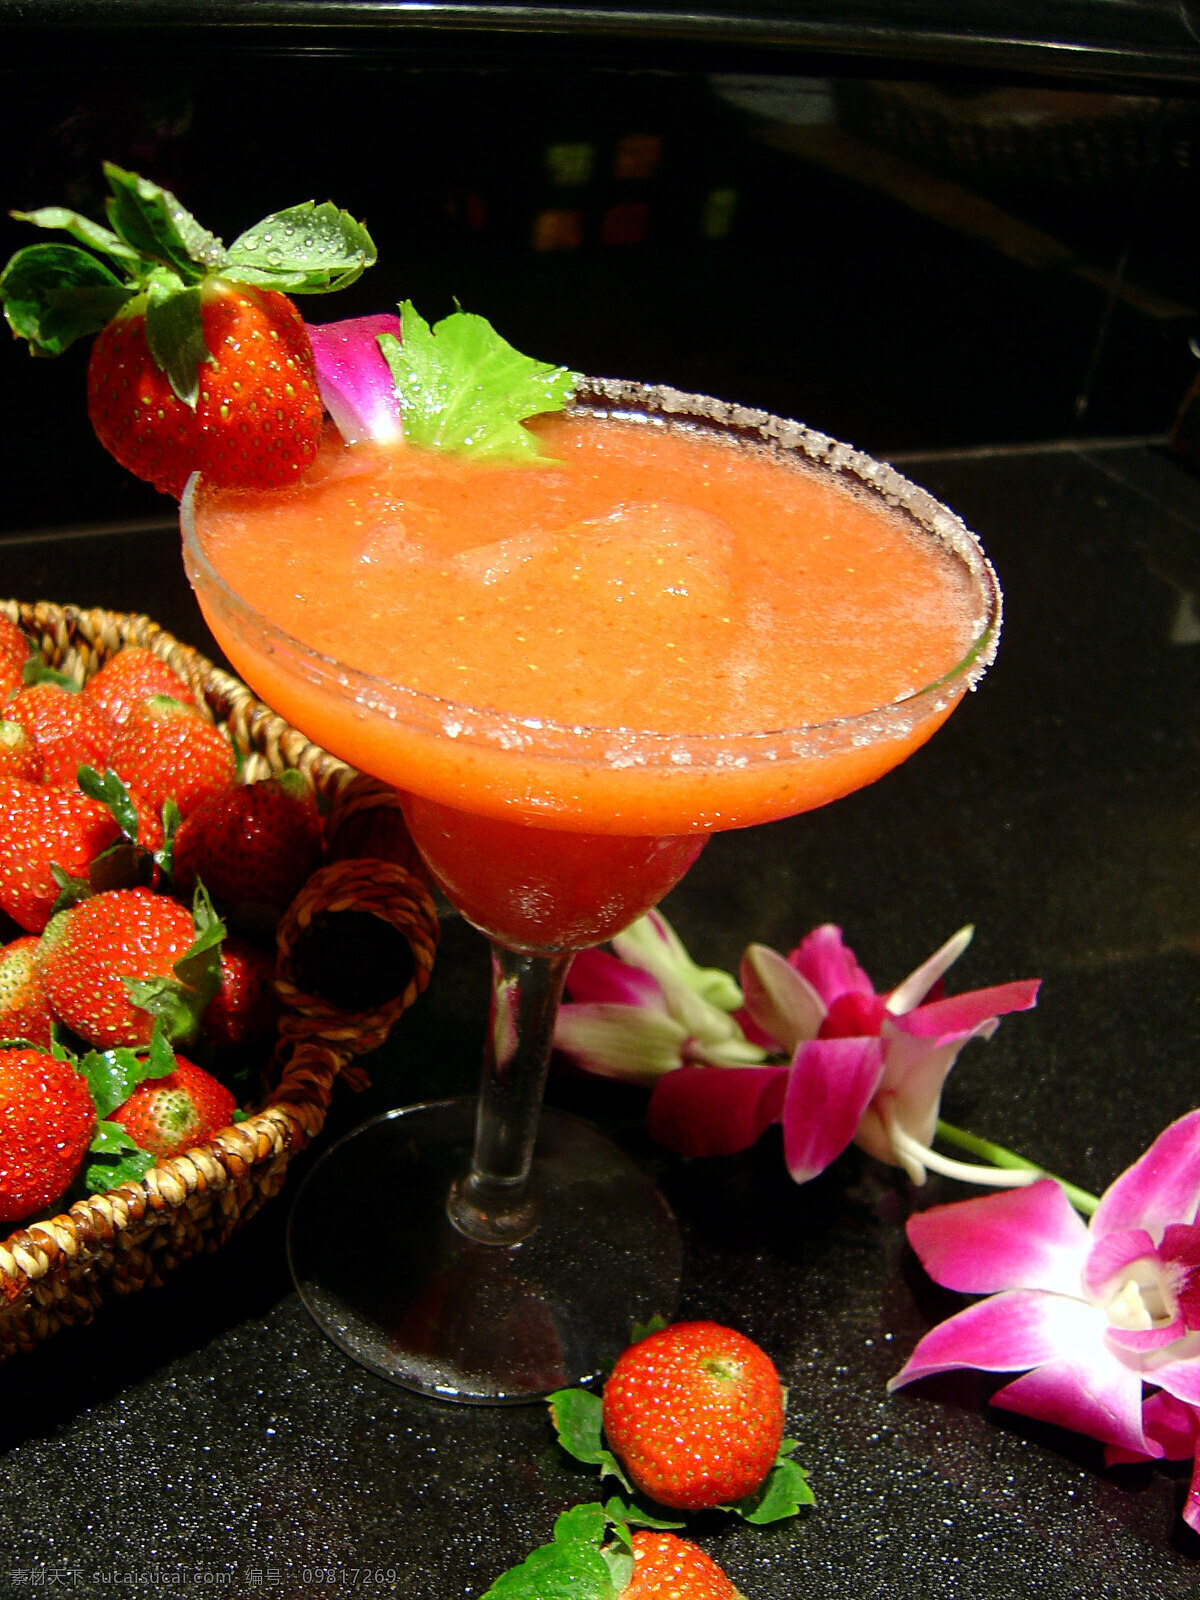 草莓汁 酒店 餐饮 西餐 酒吧 俱乐部 果汁 草莓 榨汁 花朵 饮料酒水 酒店餐饮图库 传统美食 餐饮美食